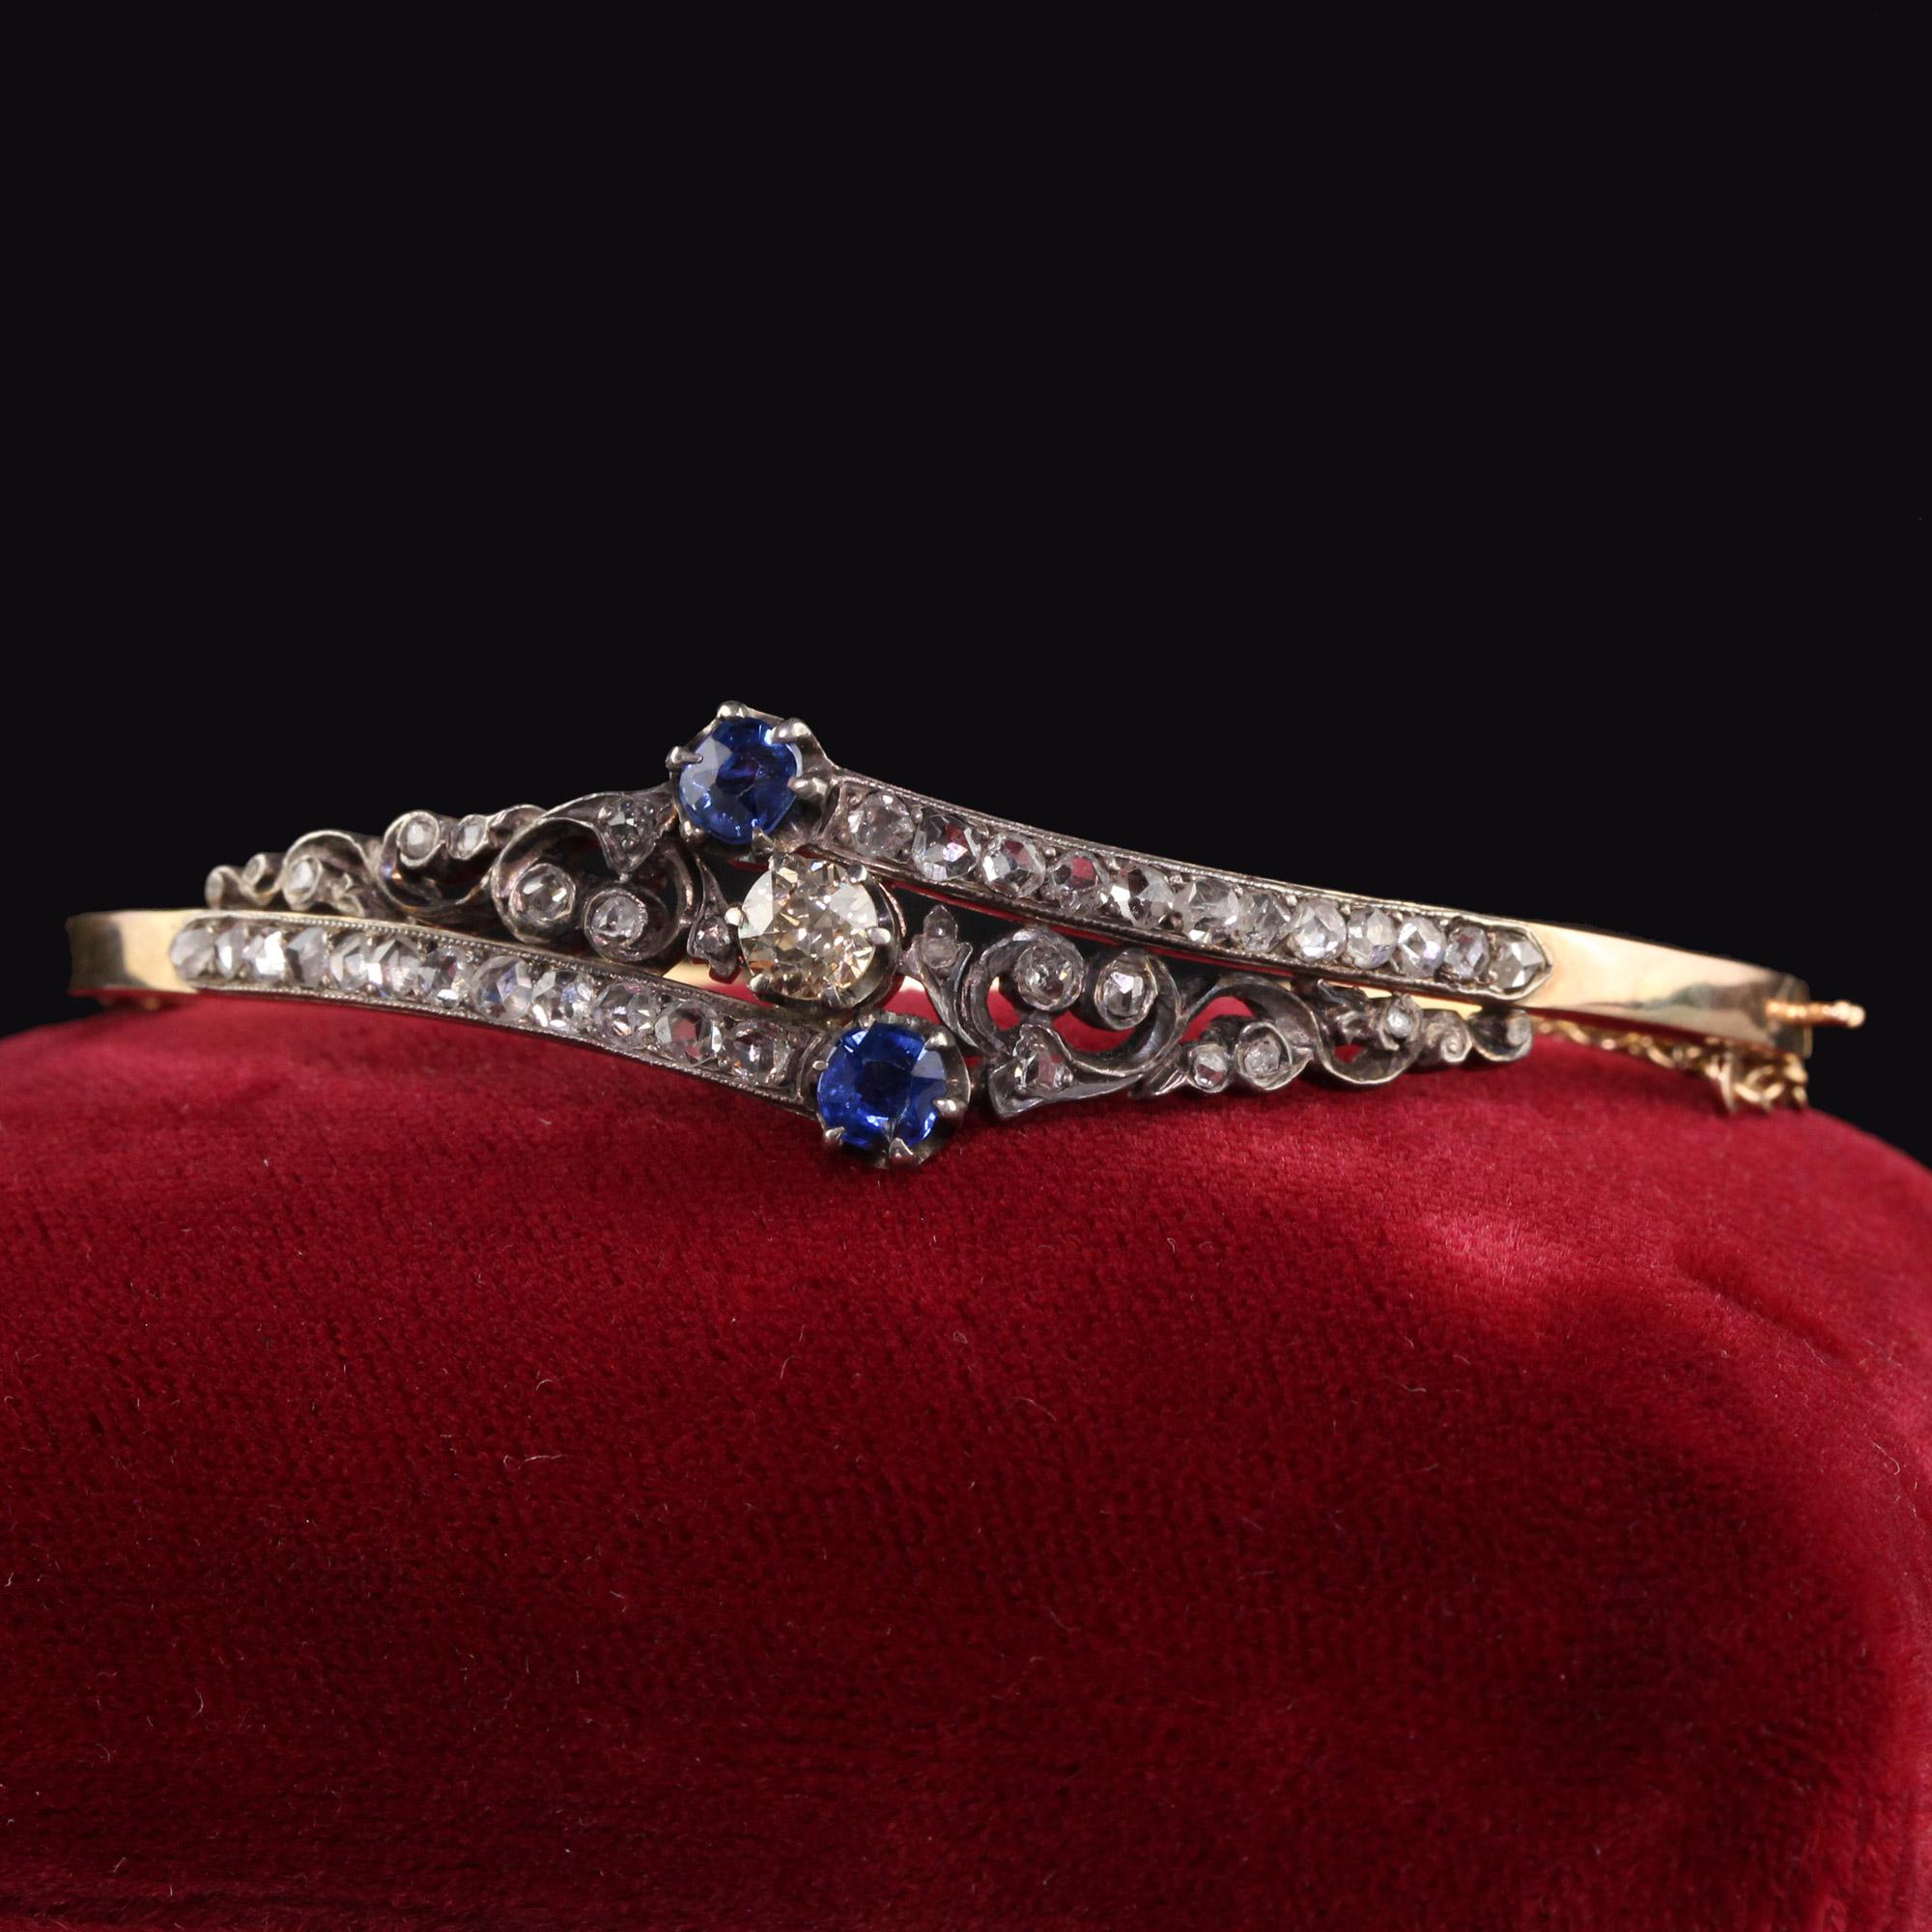 Magnifique bracelet victorien ancien en or jaune 14K avec diamant taillé en rose et saphir. Ce magnifique bracelet est fabriqué en or jaune 14k et en argent. Le bracelet est orné de gros diamants taillés en rose, d'un vieil euro champagne au centre